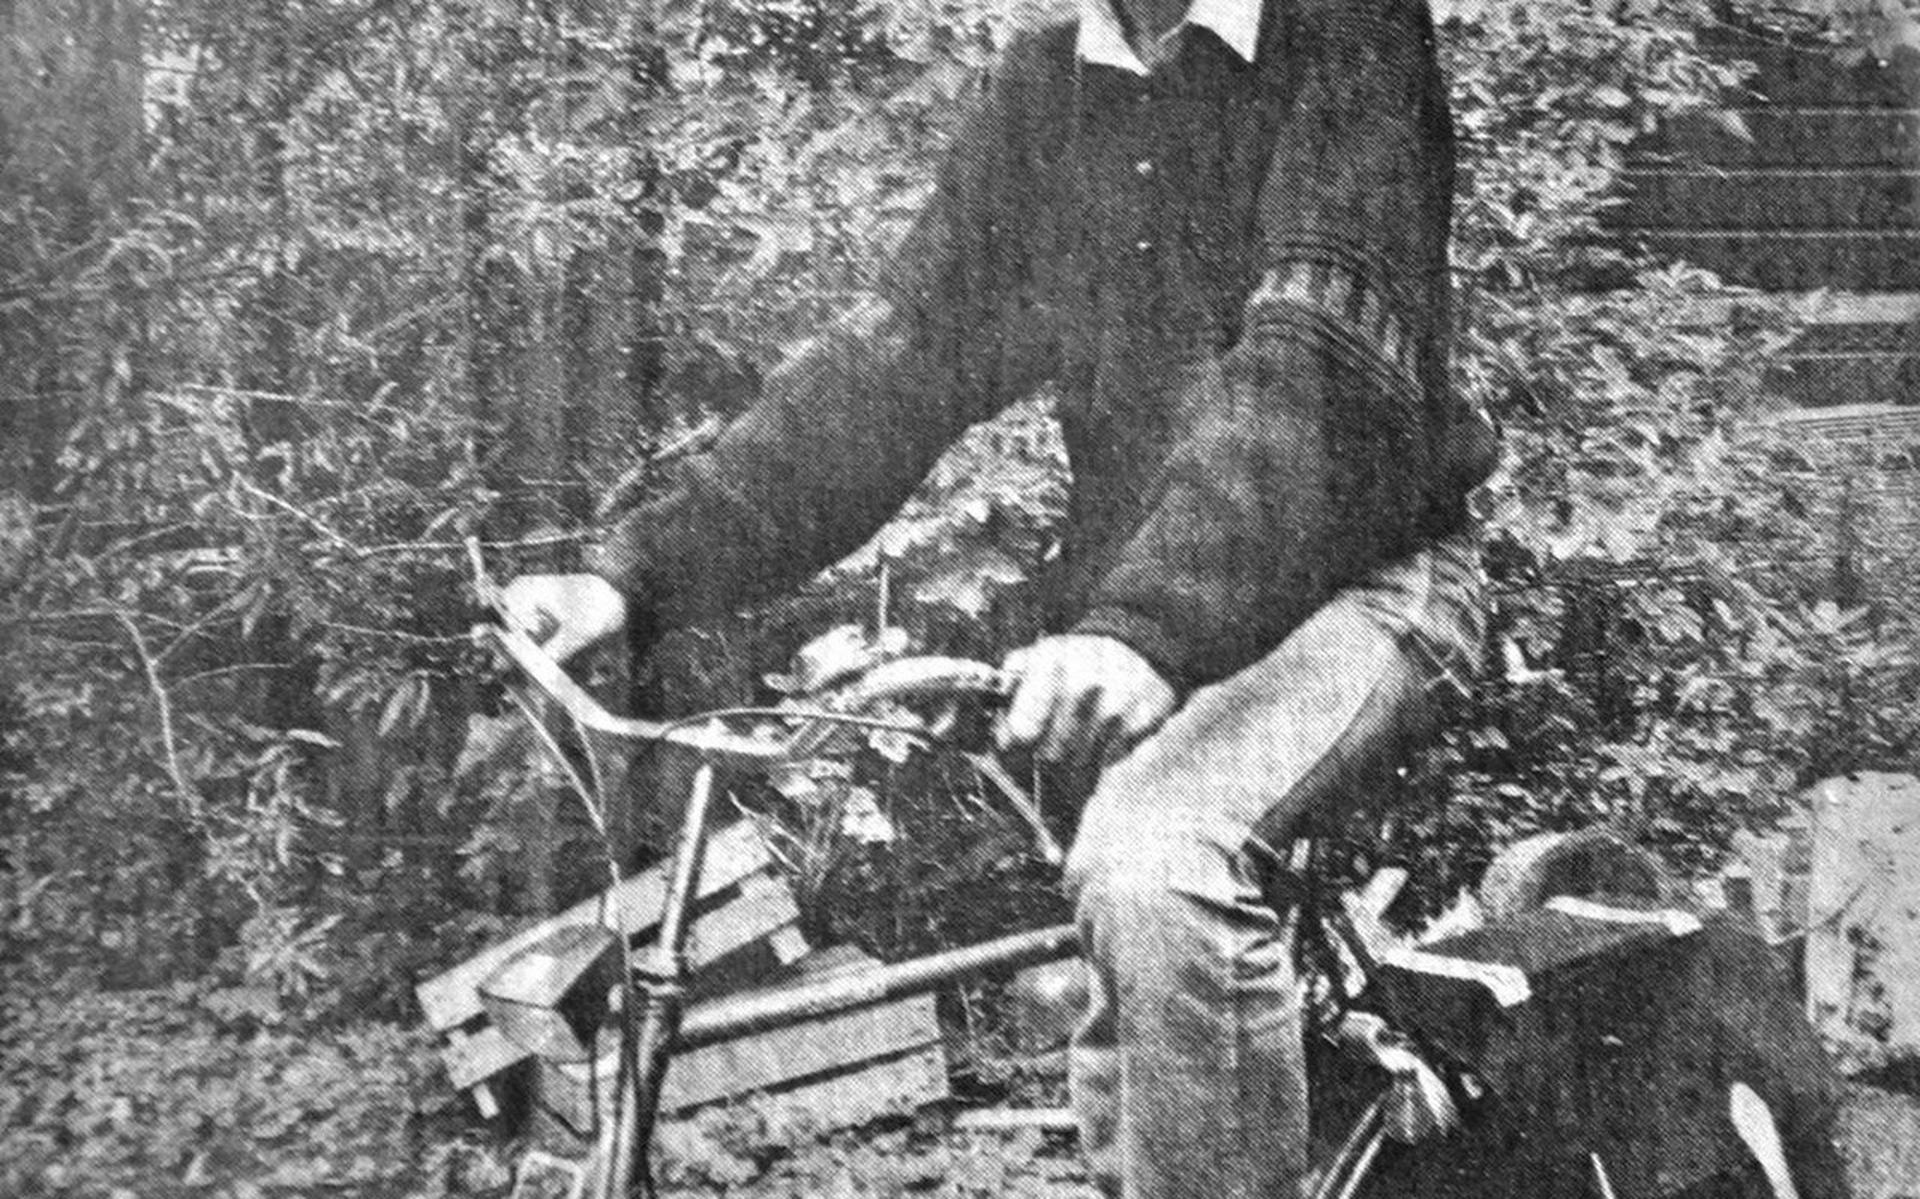 Albert op de fiets.